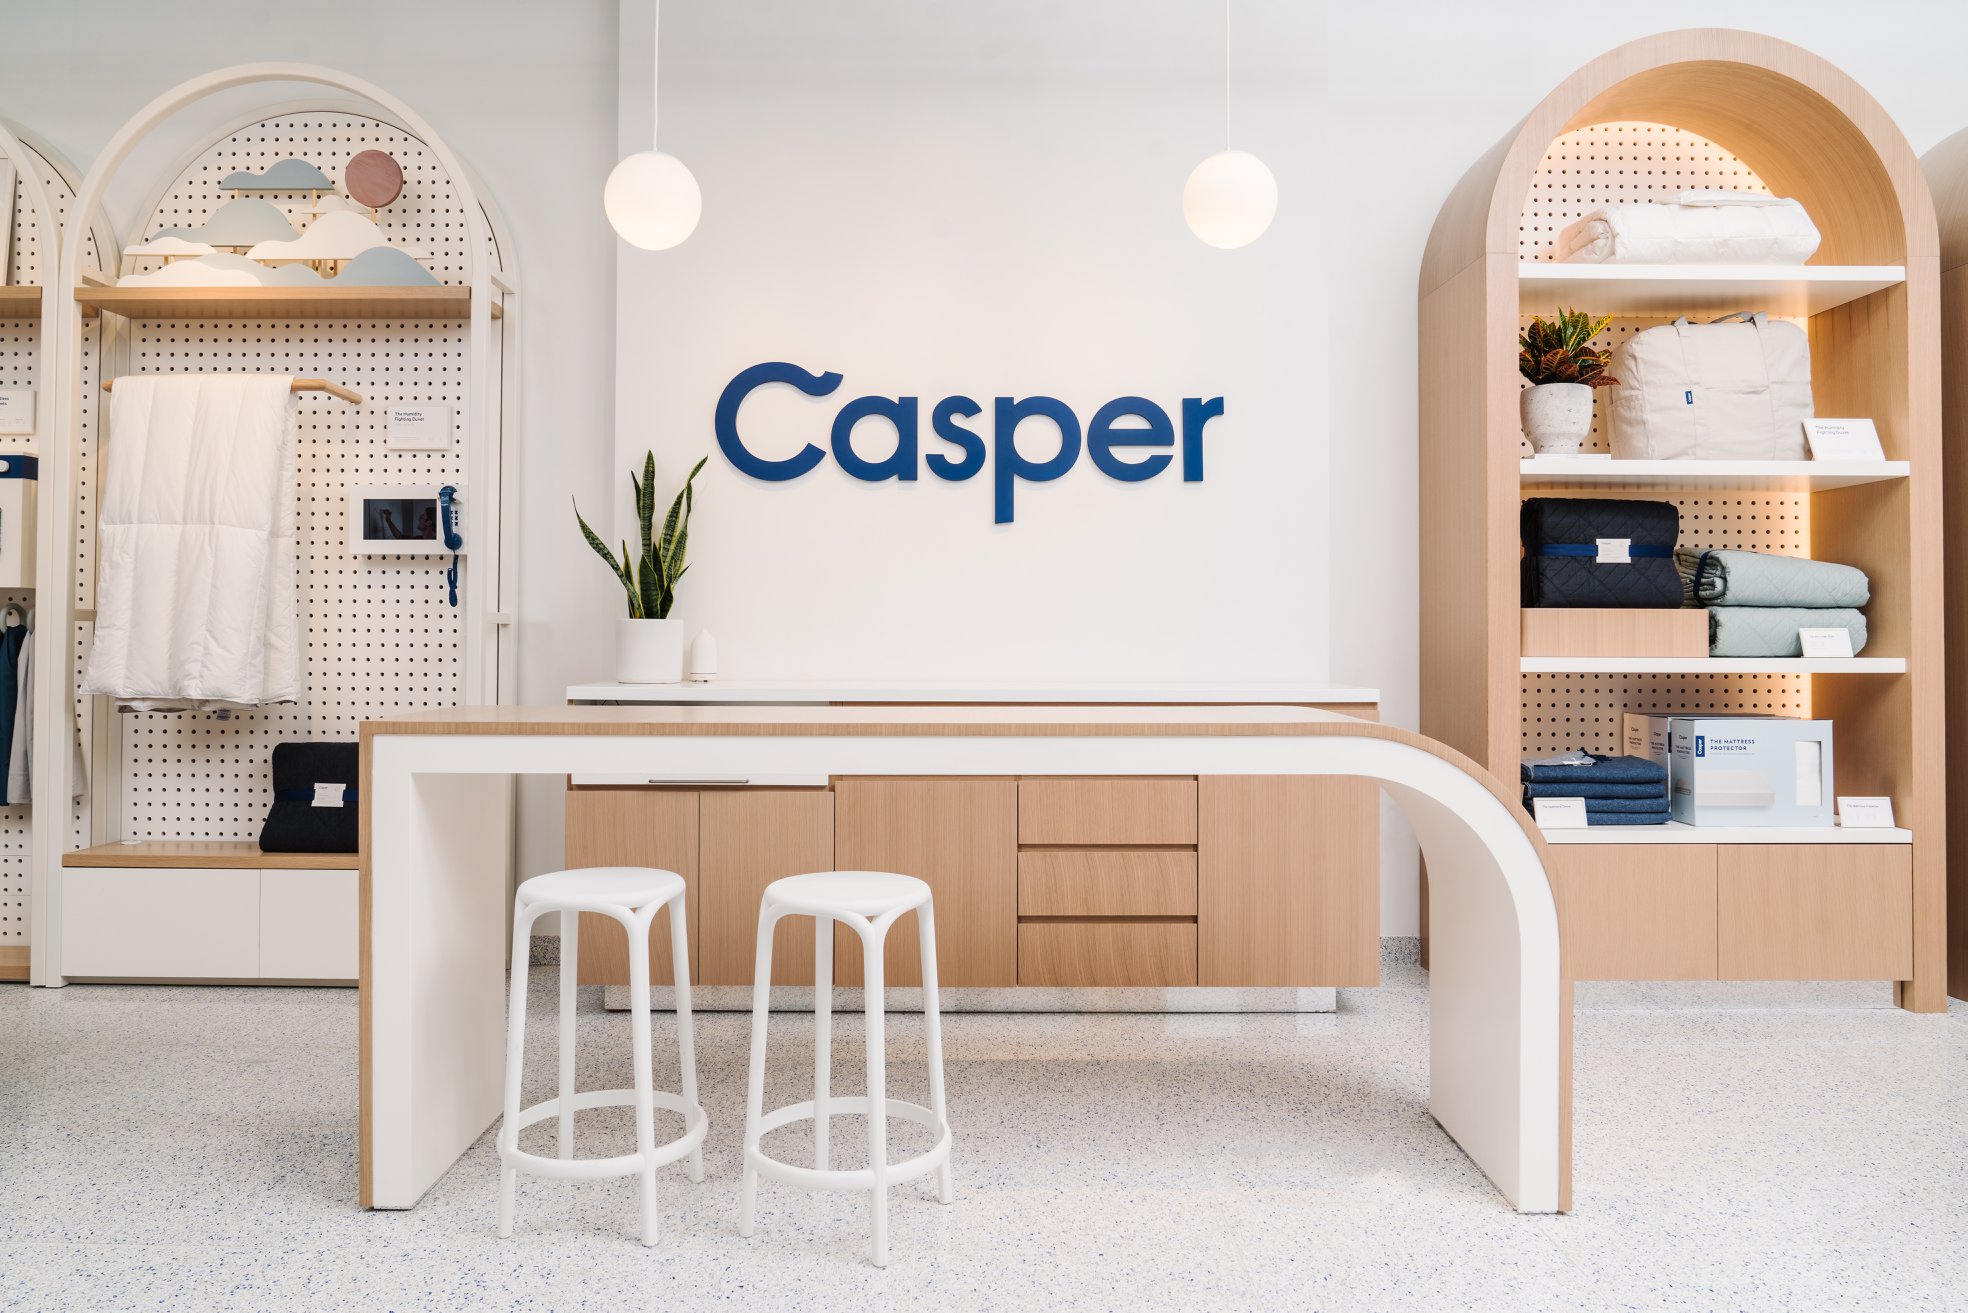 DTC 床垫品牌 Casper 融资 1 亿美元，要开更多门店和 IPO